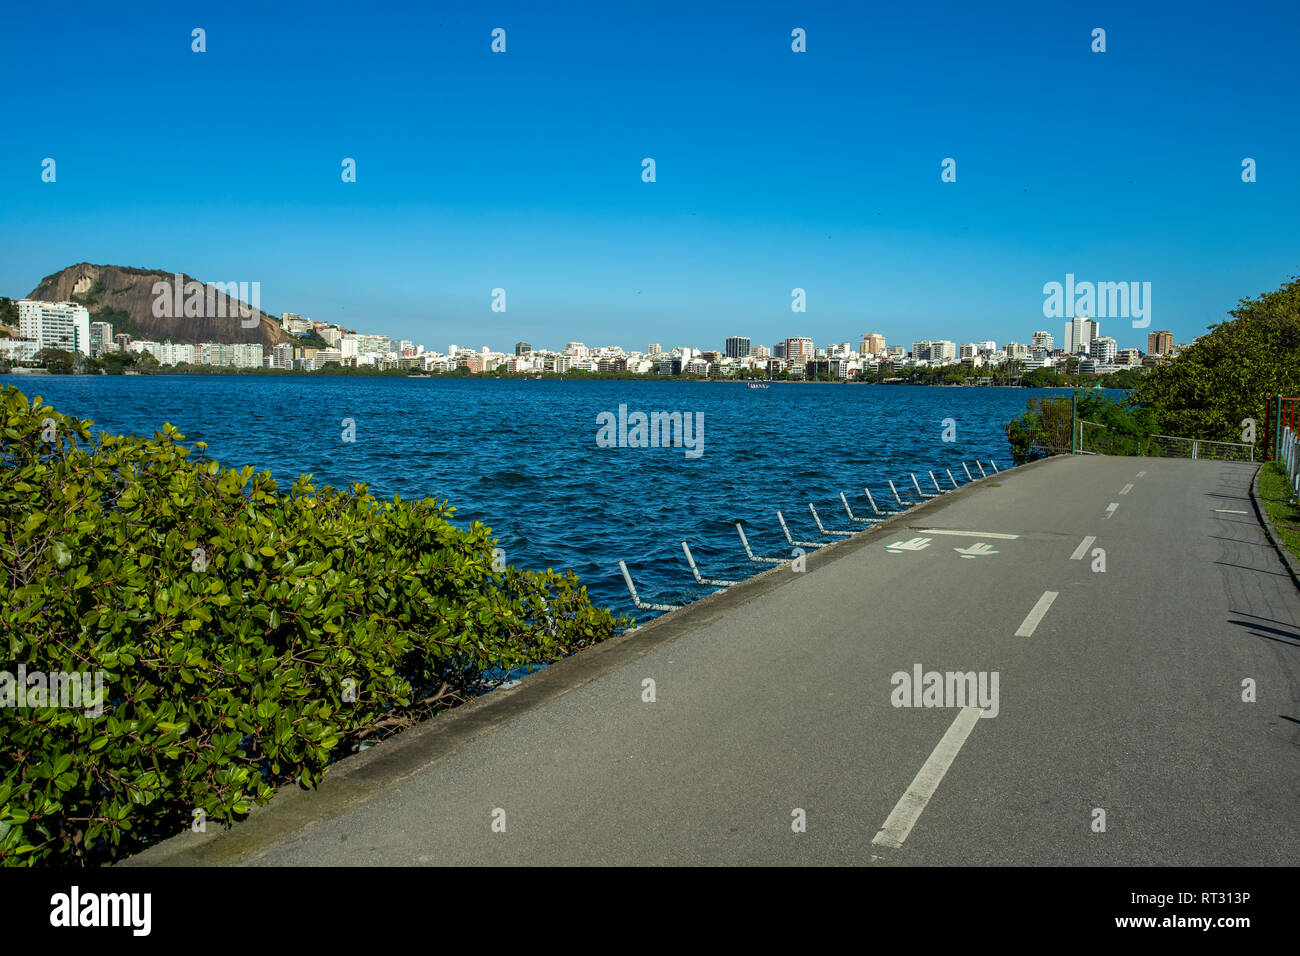 Wundervolle Stadt. Wunderbare Orte in der Welt. Lagune und Nachbarschaft von Ipanema in Rio de Janeiro, Brasilien Südamerika. Stockfoto